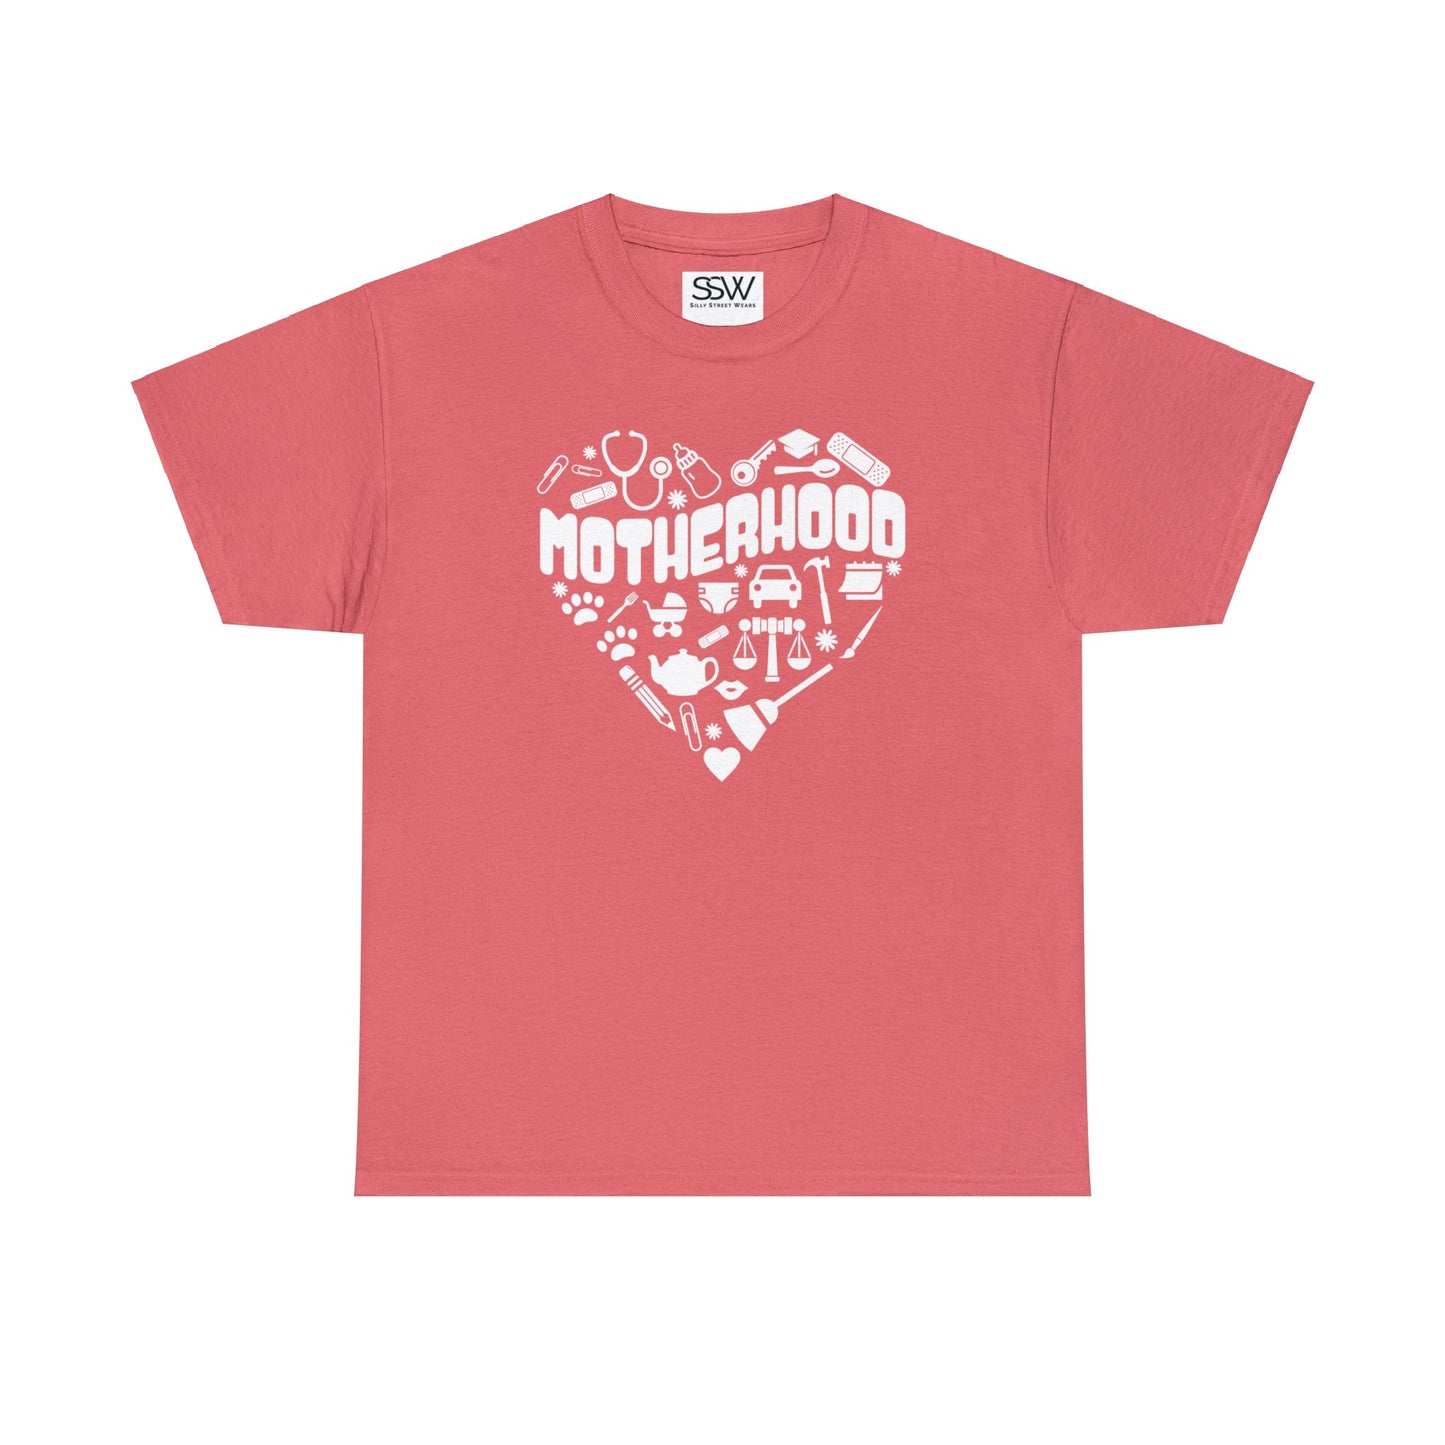 Motherhood Comfort Tee Shirt